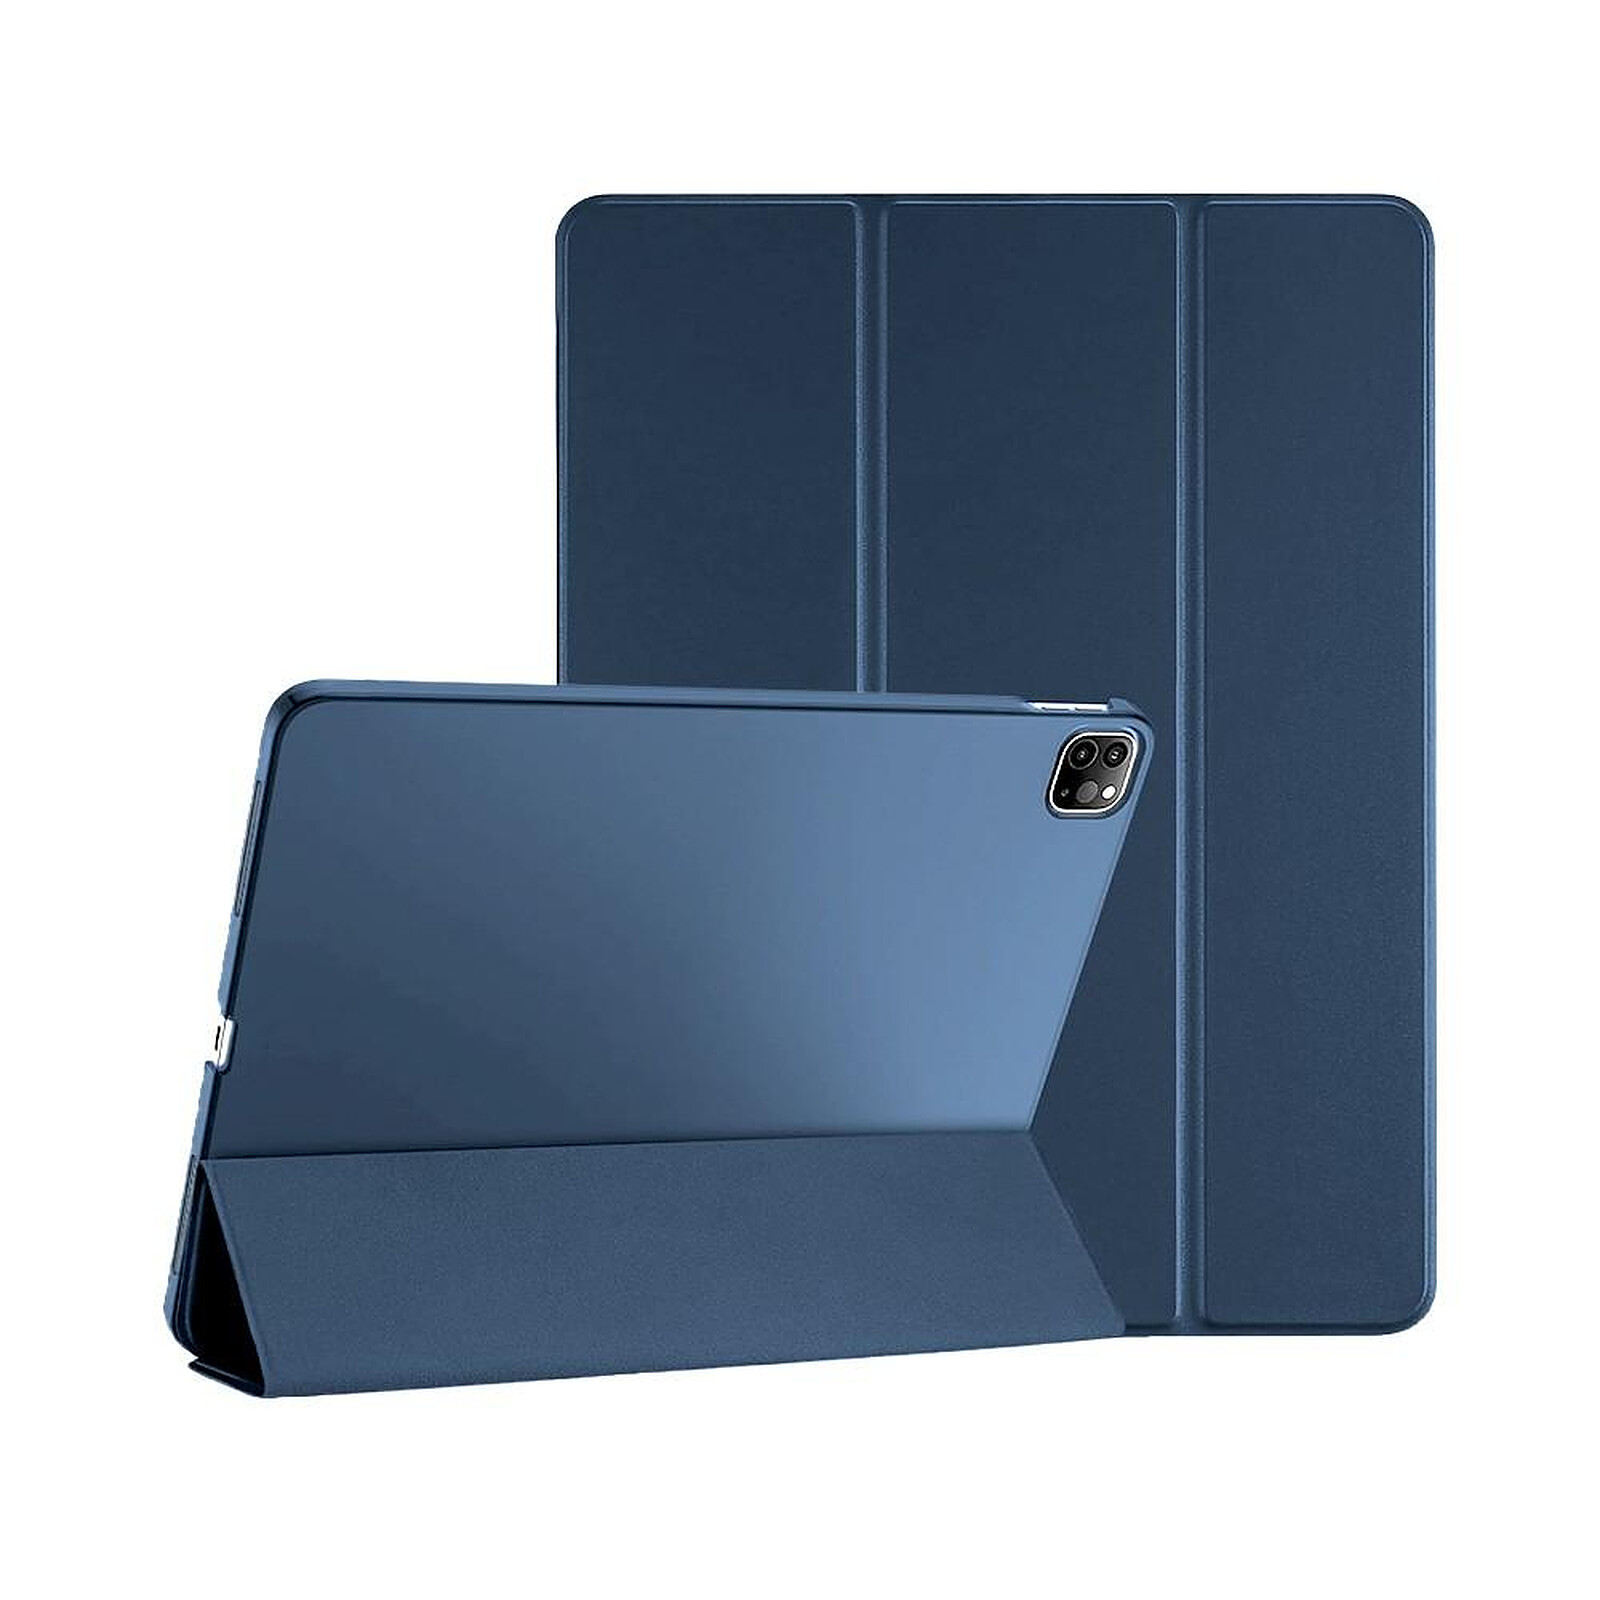 Avizar Coque pour Apple iPad Pro 11 2020 / 2018 / 2021 et iPad Air 2020  Protection Silicone Gel Flexible Coins Bumper Bleu et Rose - Etui tablette  - LDLC